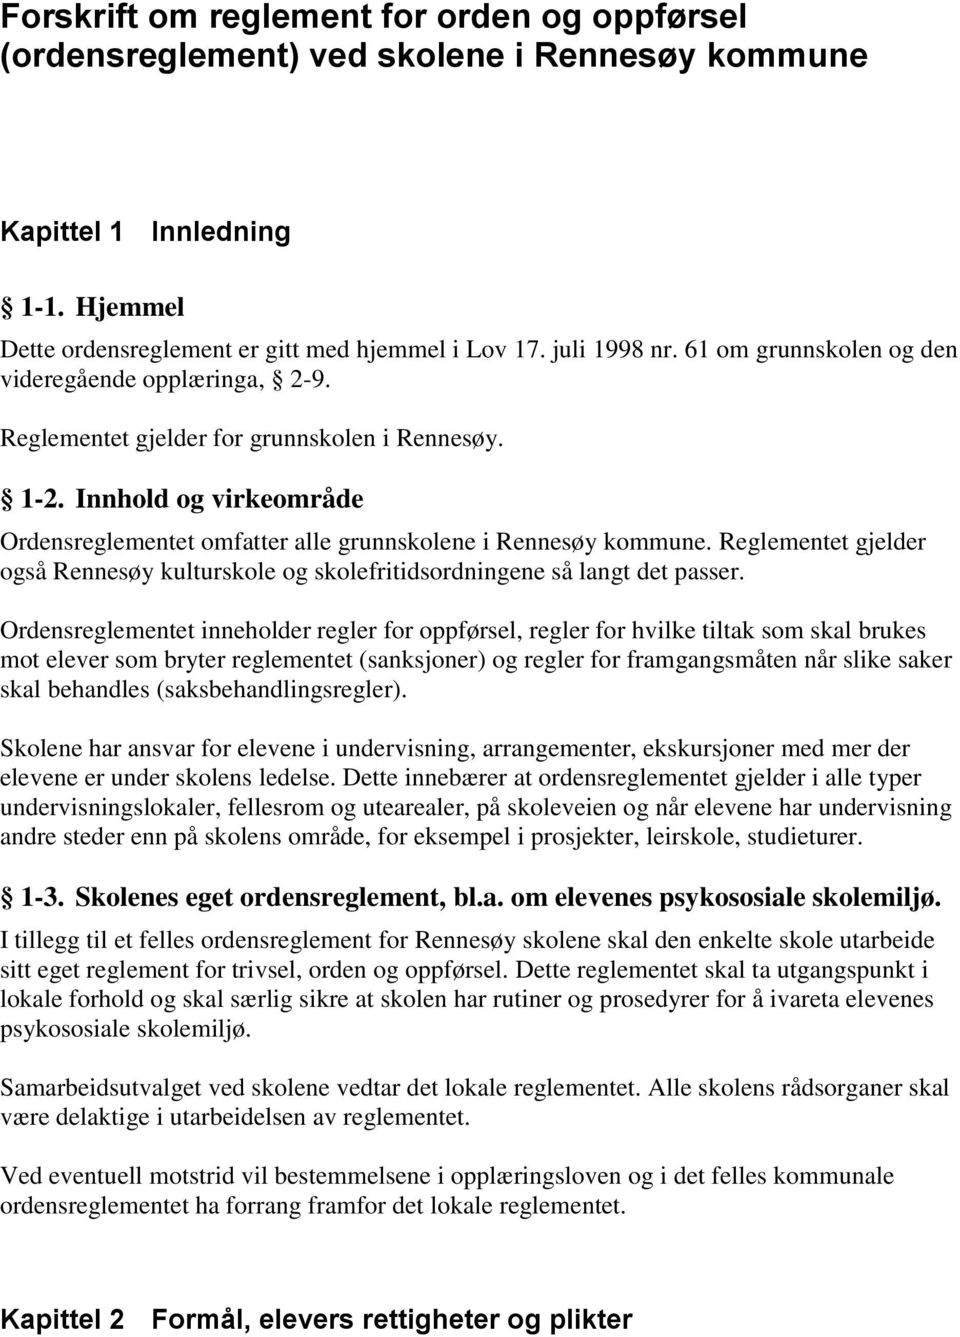 Reglementet gjelder også Rennesøy kulturskole og skolefritidsordningene så langt det passer.